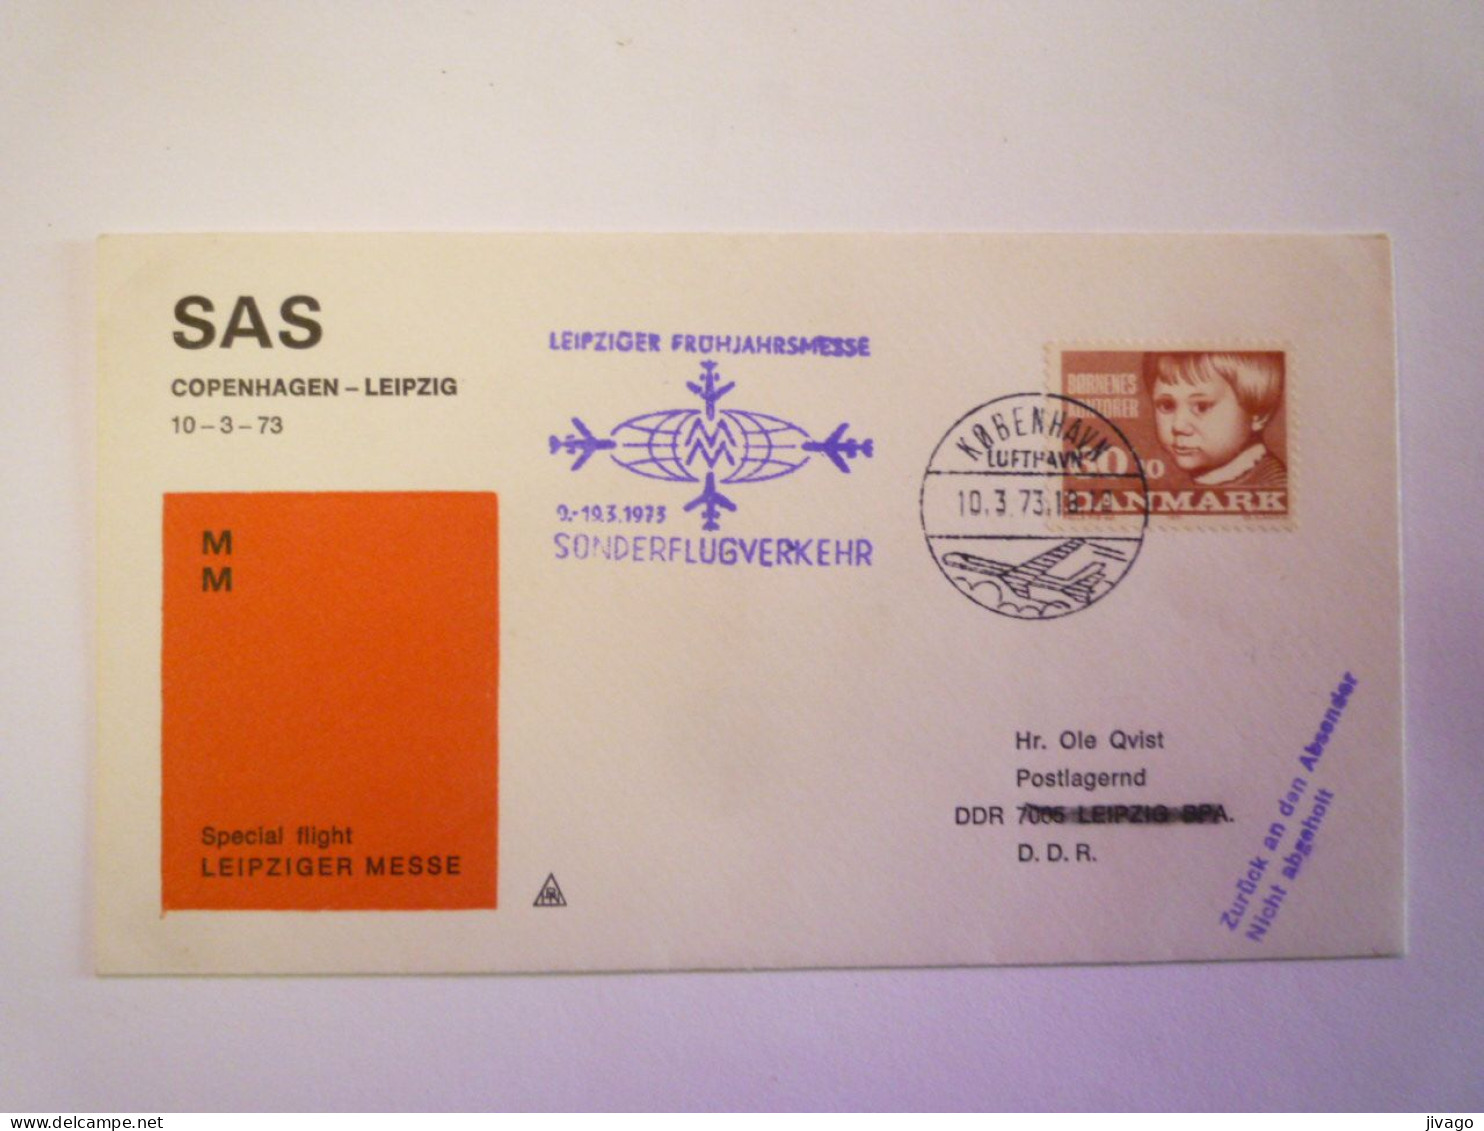 2024 - 609  SAS  COPENHAGEN  -  LEIPZIG  Special Flight  LEIPZIGER MESSE   1973    XXX - Poste Aérienne